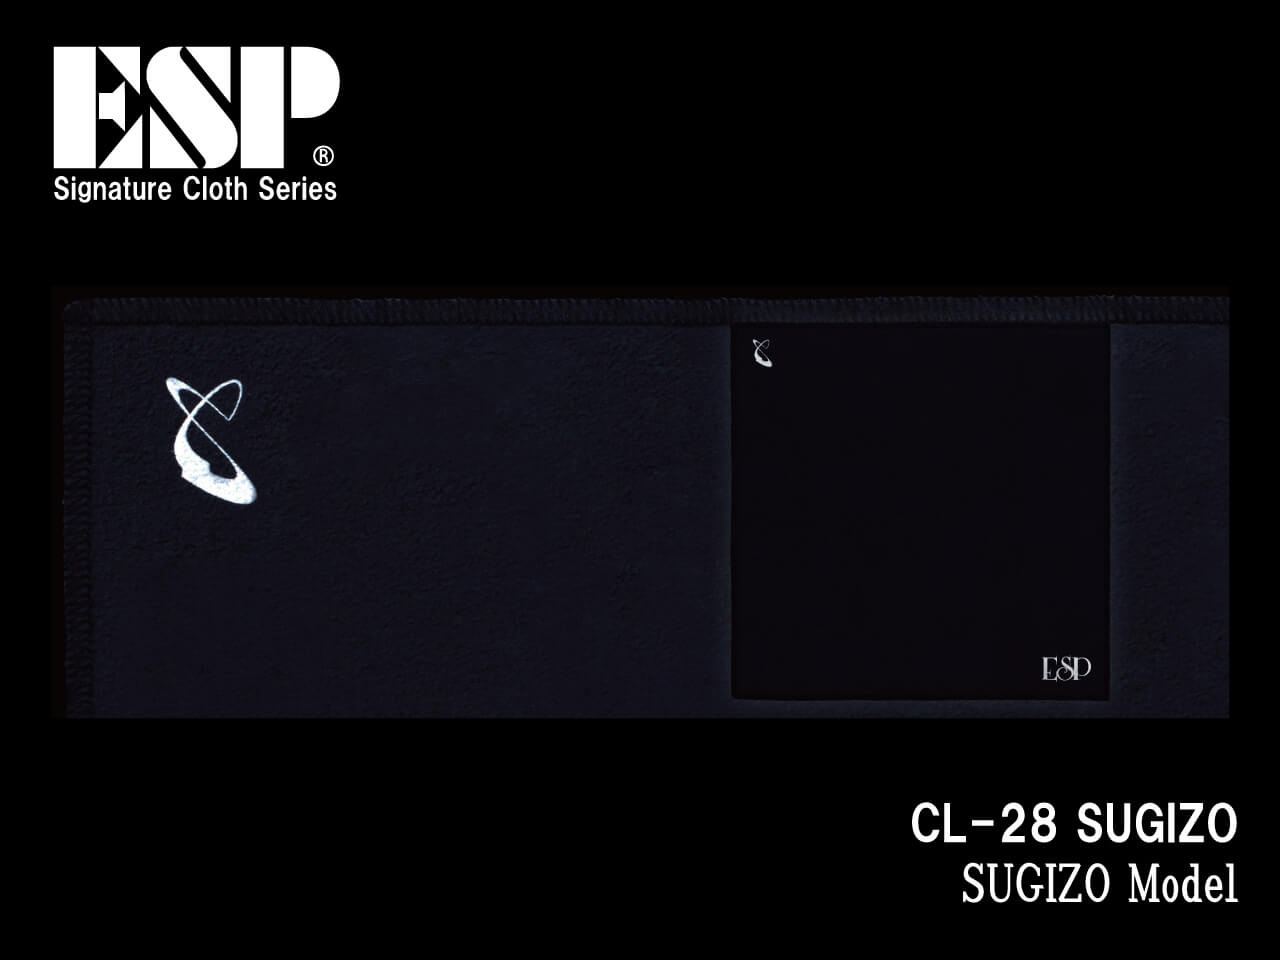 ESP(イーエスピー) Signature Cloth CL-28 SUGIZO (LUNA SEA/SUGIZOモデル)